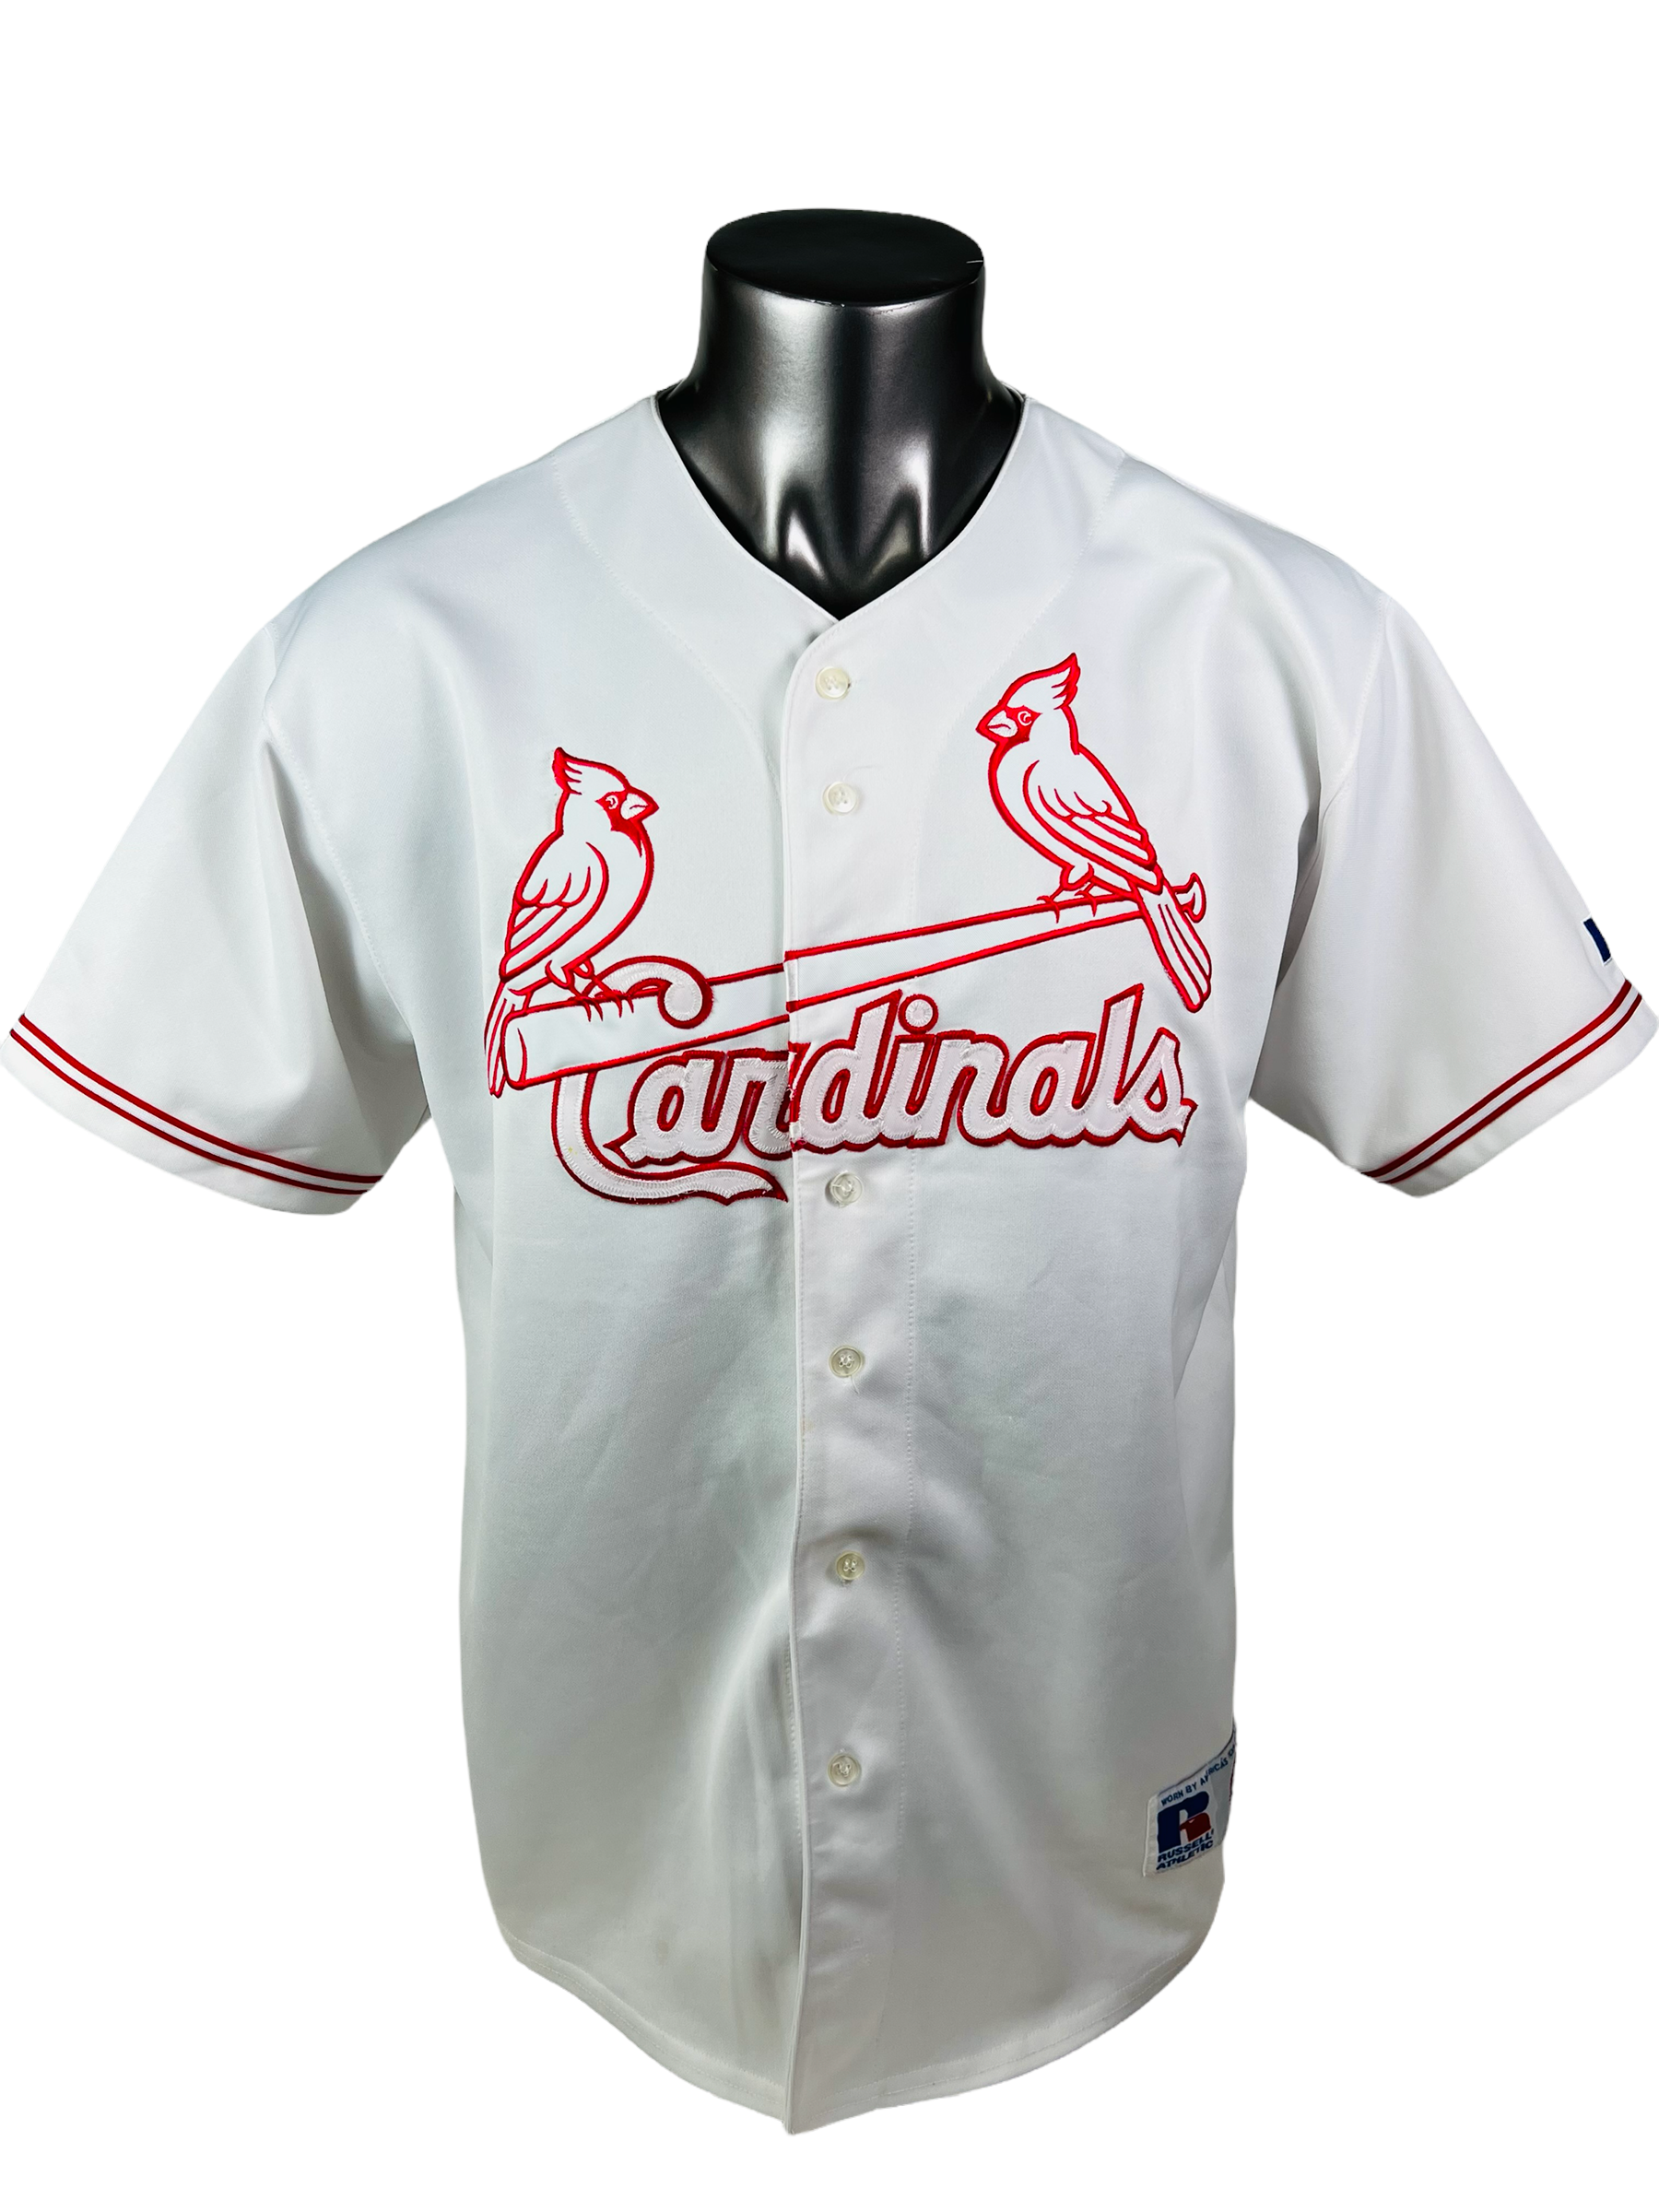 all st louis cardinals jerseys